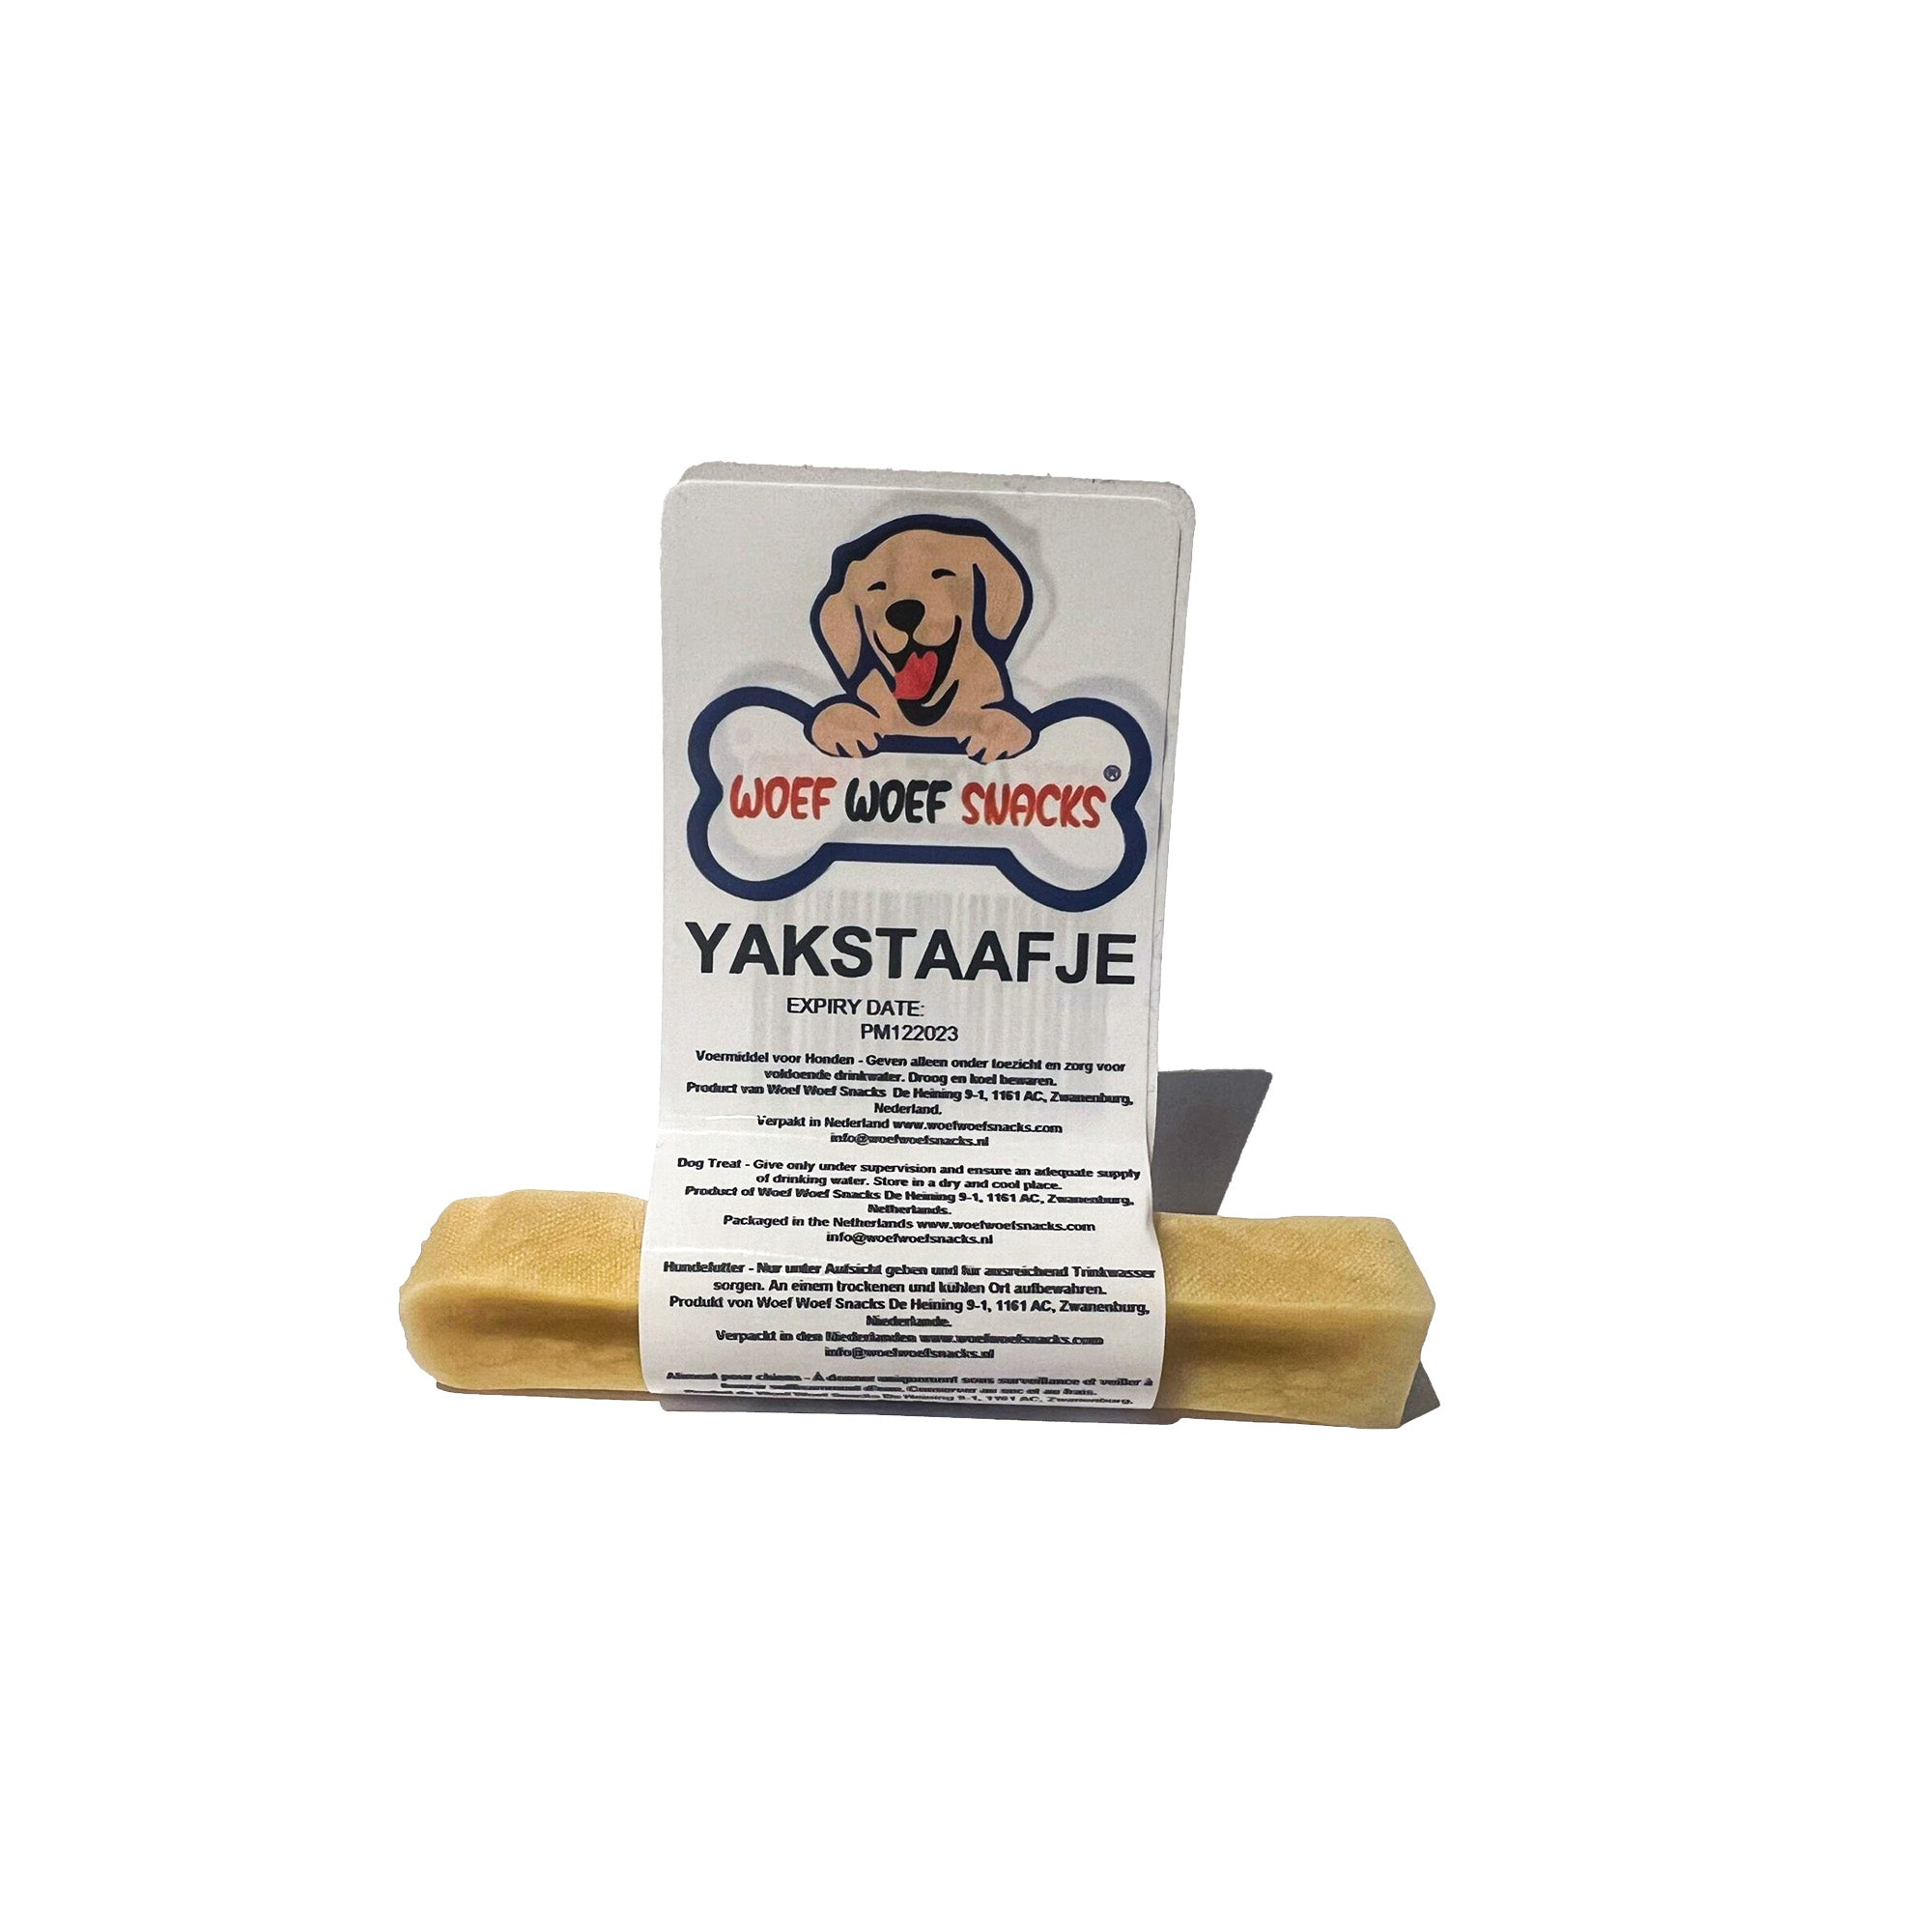 De Yakstaaf van Woef Woef Snacks is een 100% natuurlijke hondensnack. Het Yakstaafje is het meeste geschikt voor kleine honden.